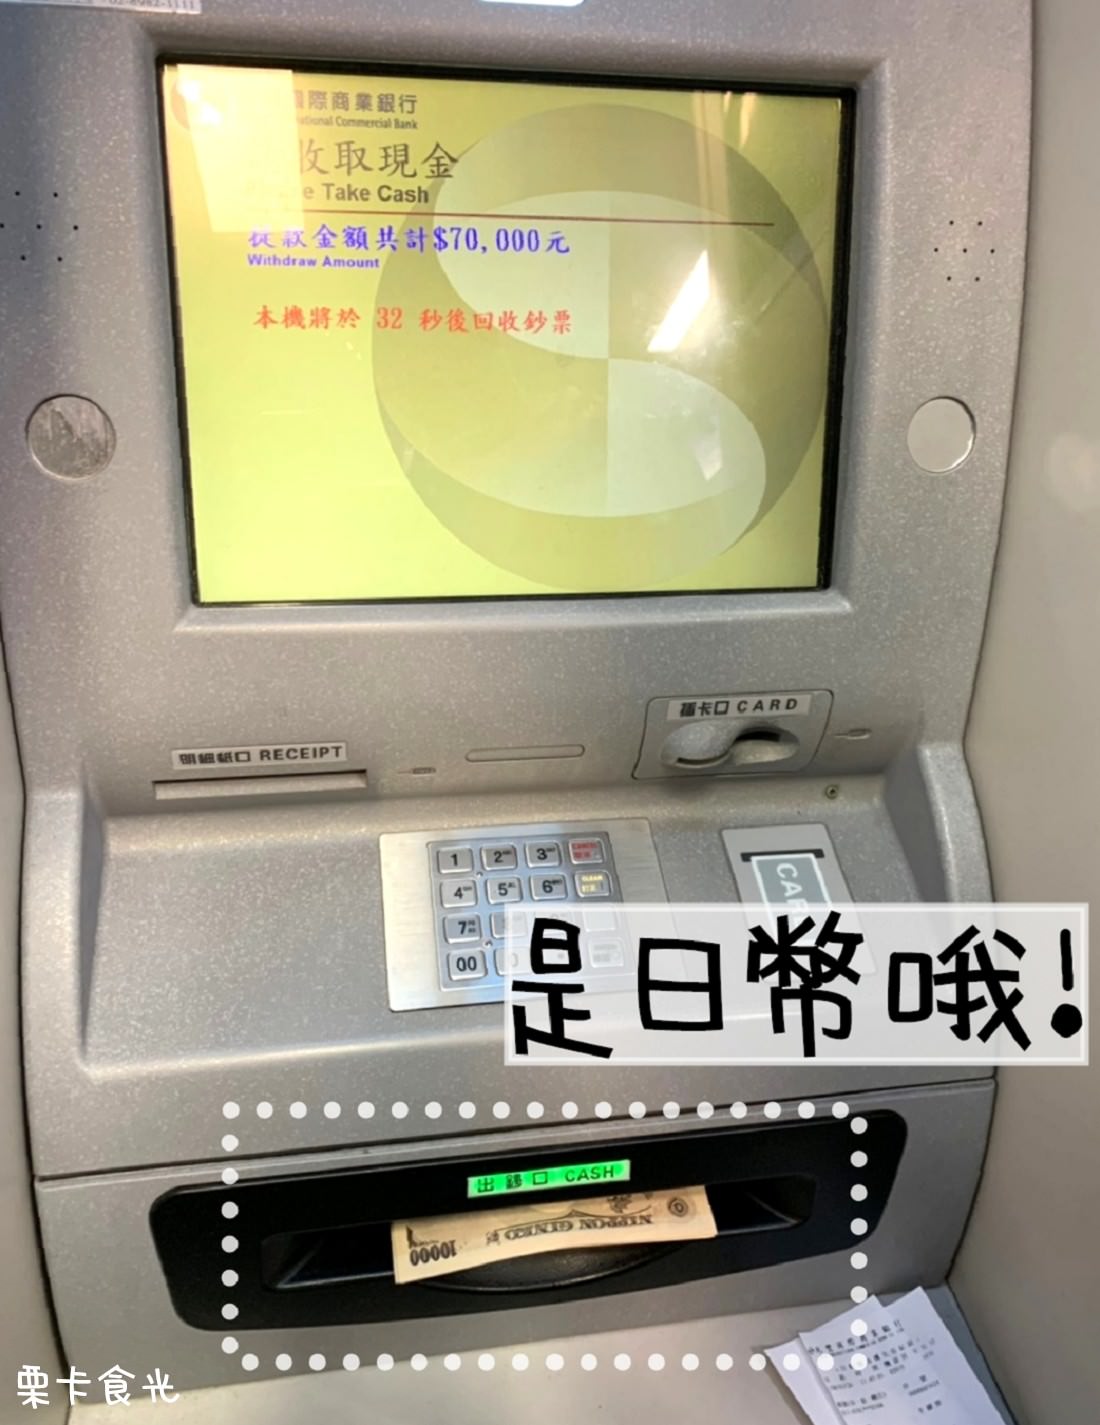 兆豐銀行 桃園機場 日幣 換匯 美金 ATM 假日 提款機 外幣提款機